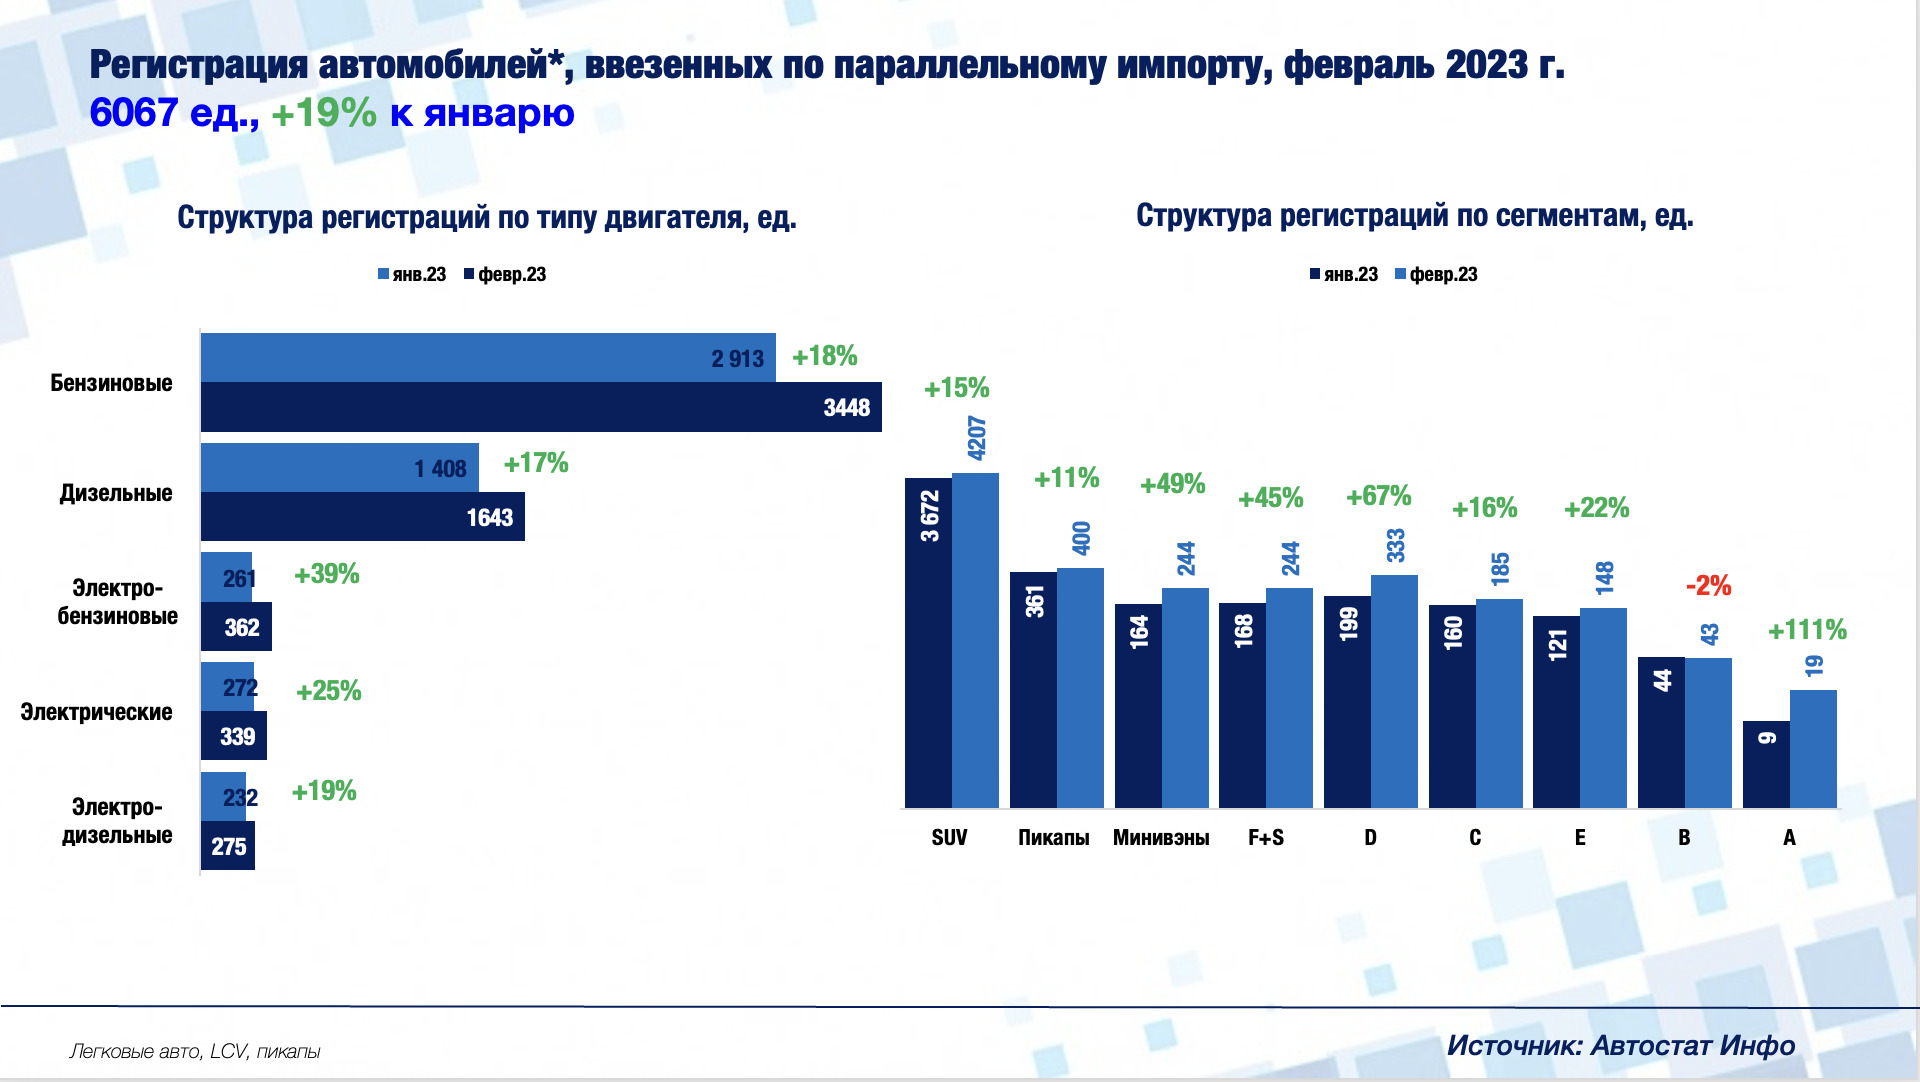 Статистика продажи мебели в россии